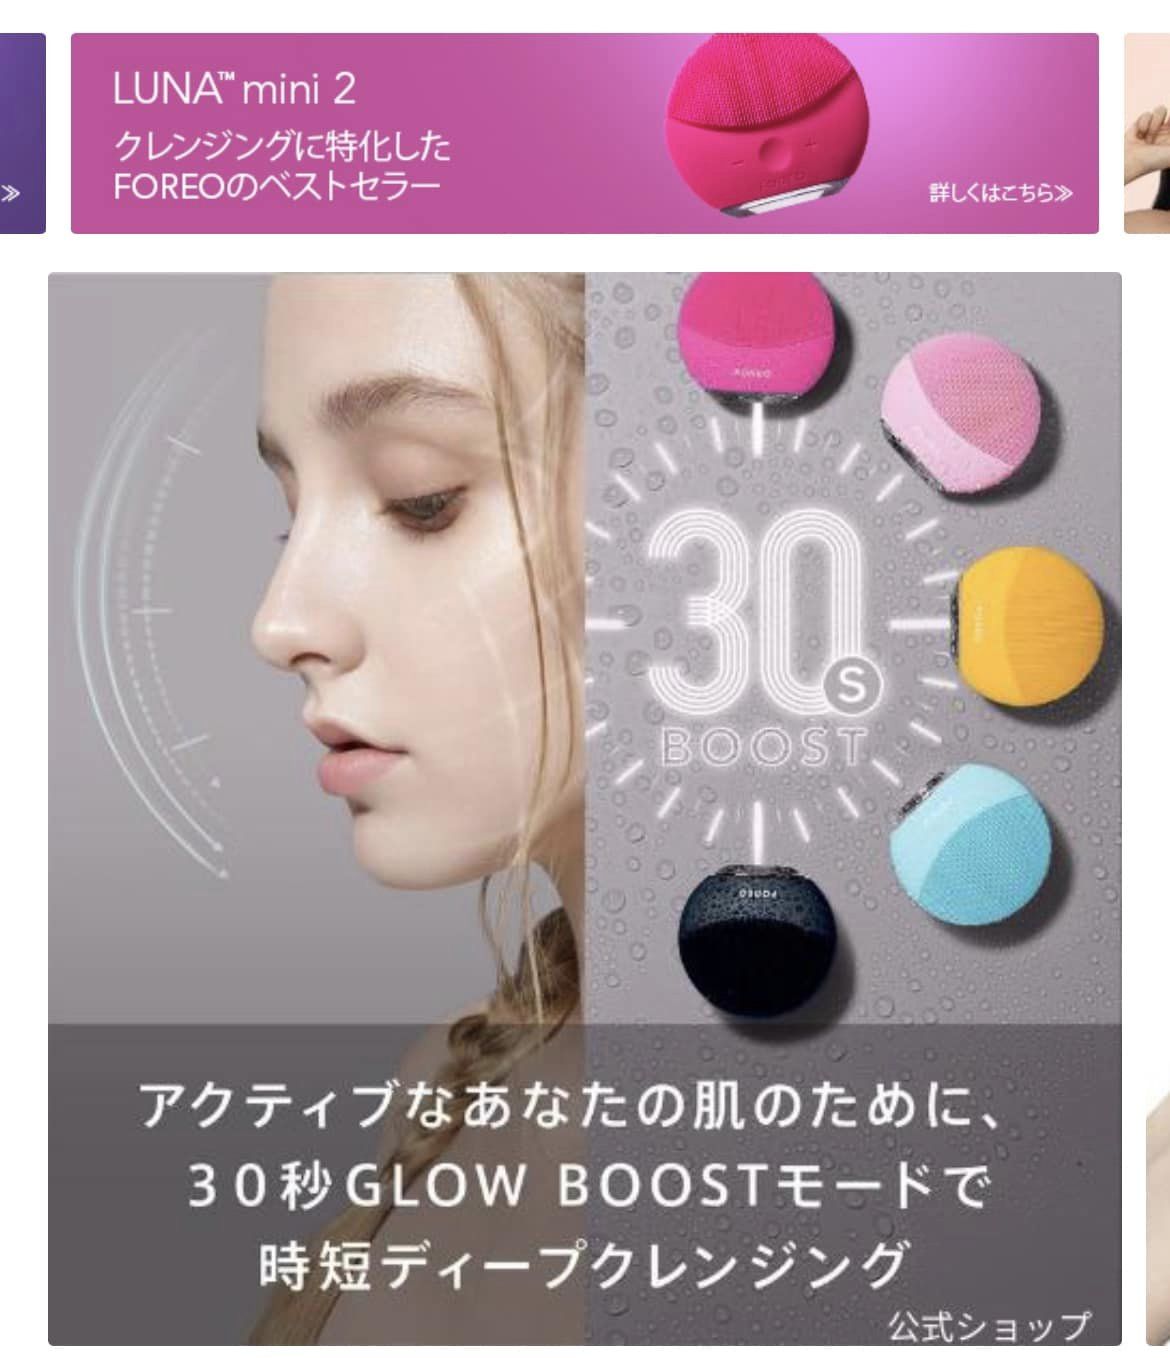 使用方法FOREO LUNA mini 2 電動洗顔 クレンジングブラシ (ピンク色